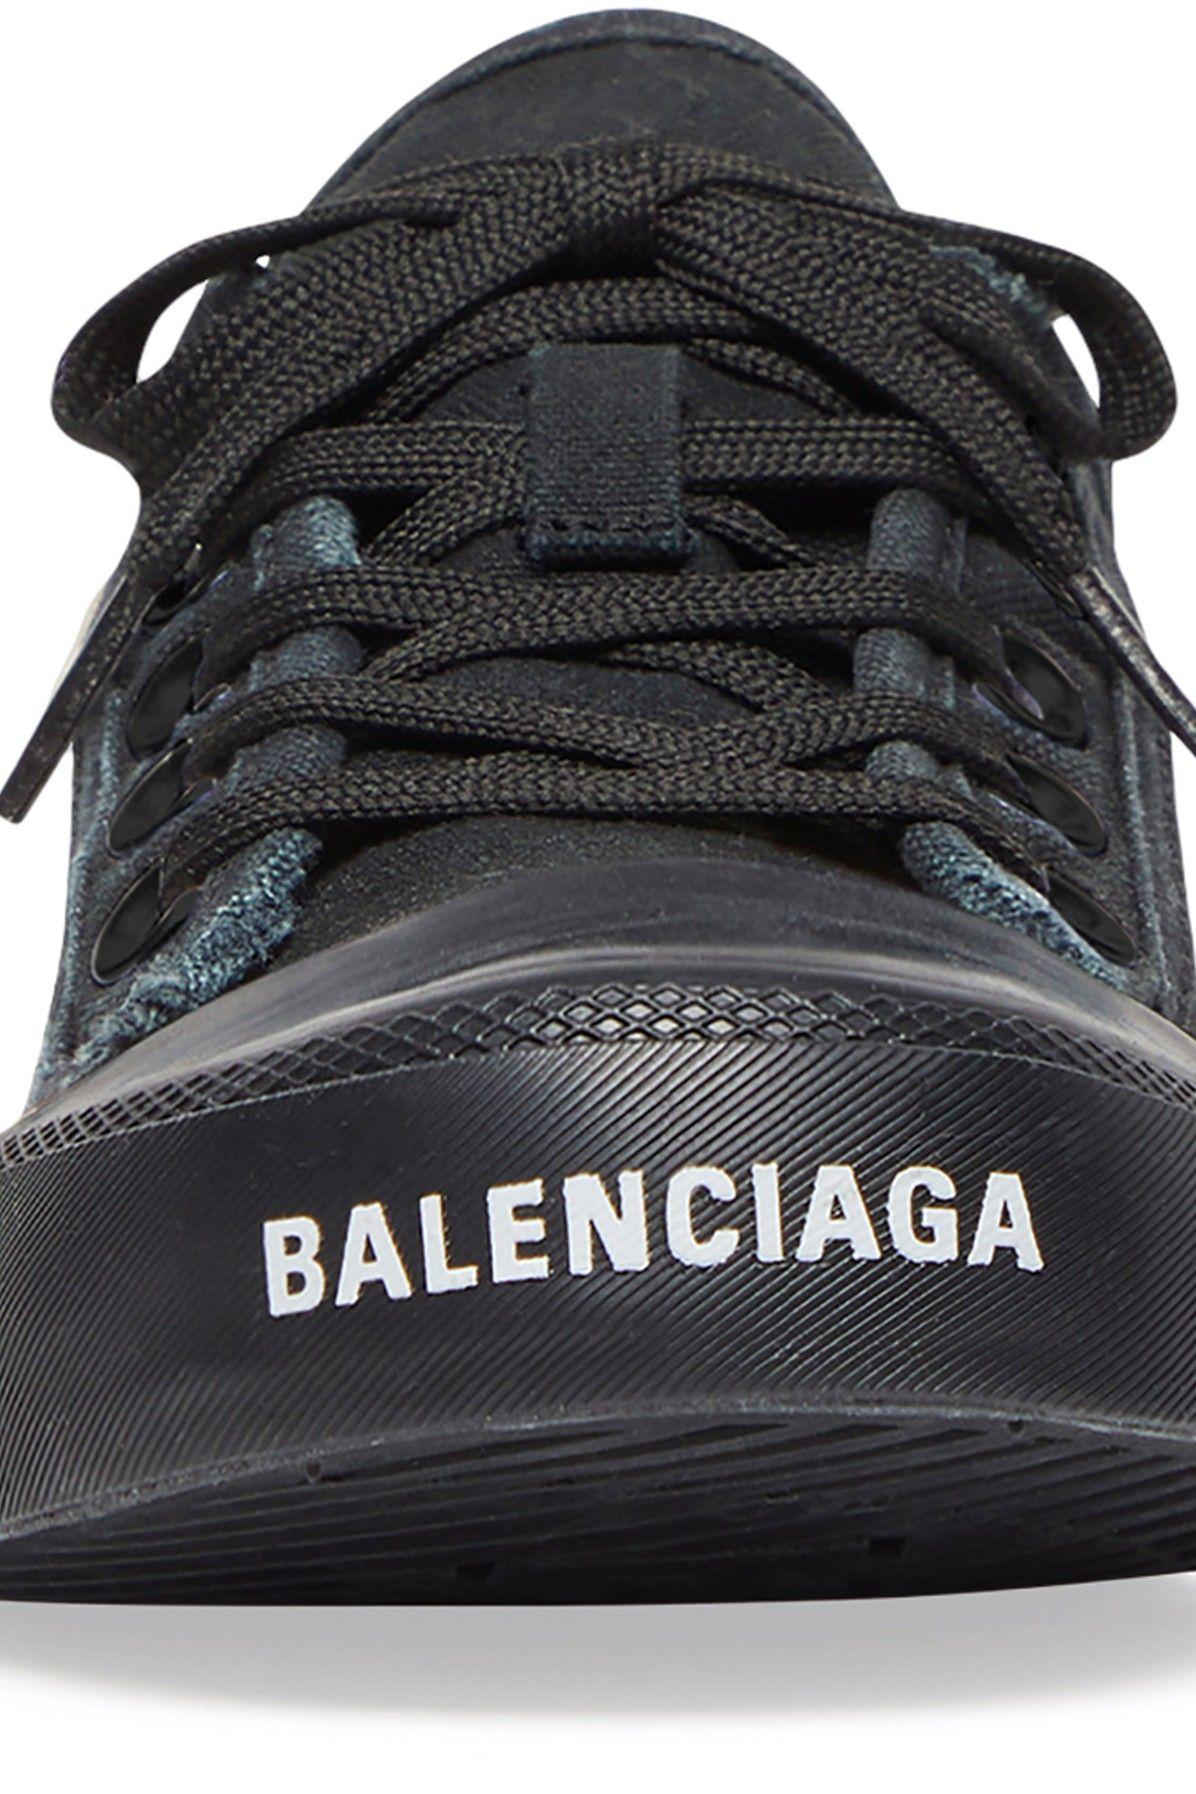 Balenciaga Paris Low Top Sneakers in Black for Men | Lyst